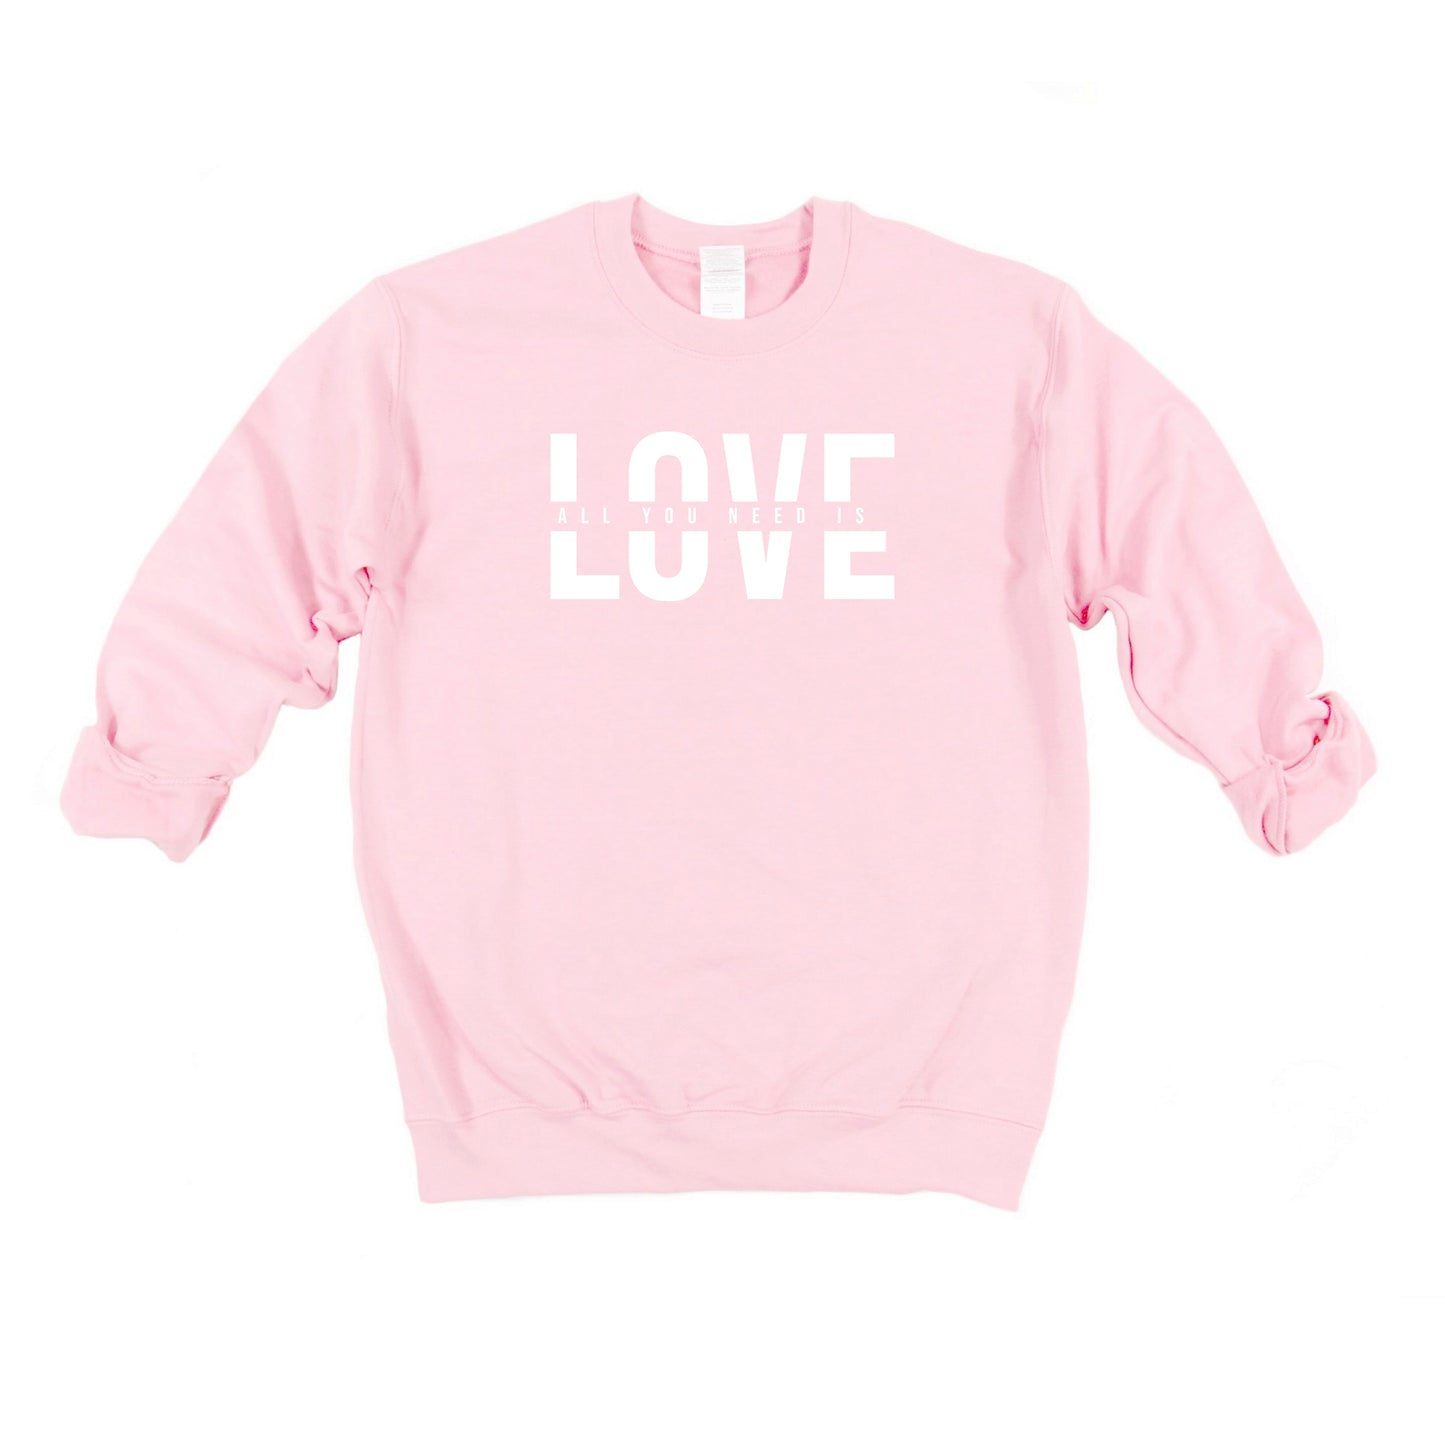 Love Is All You Need Split | Sweatshirt